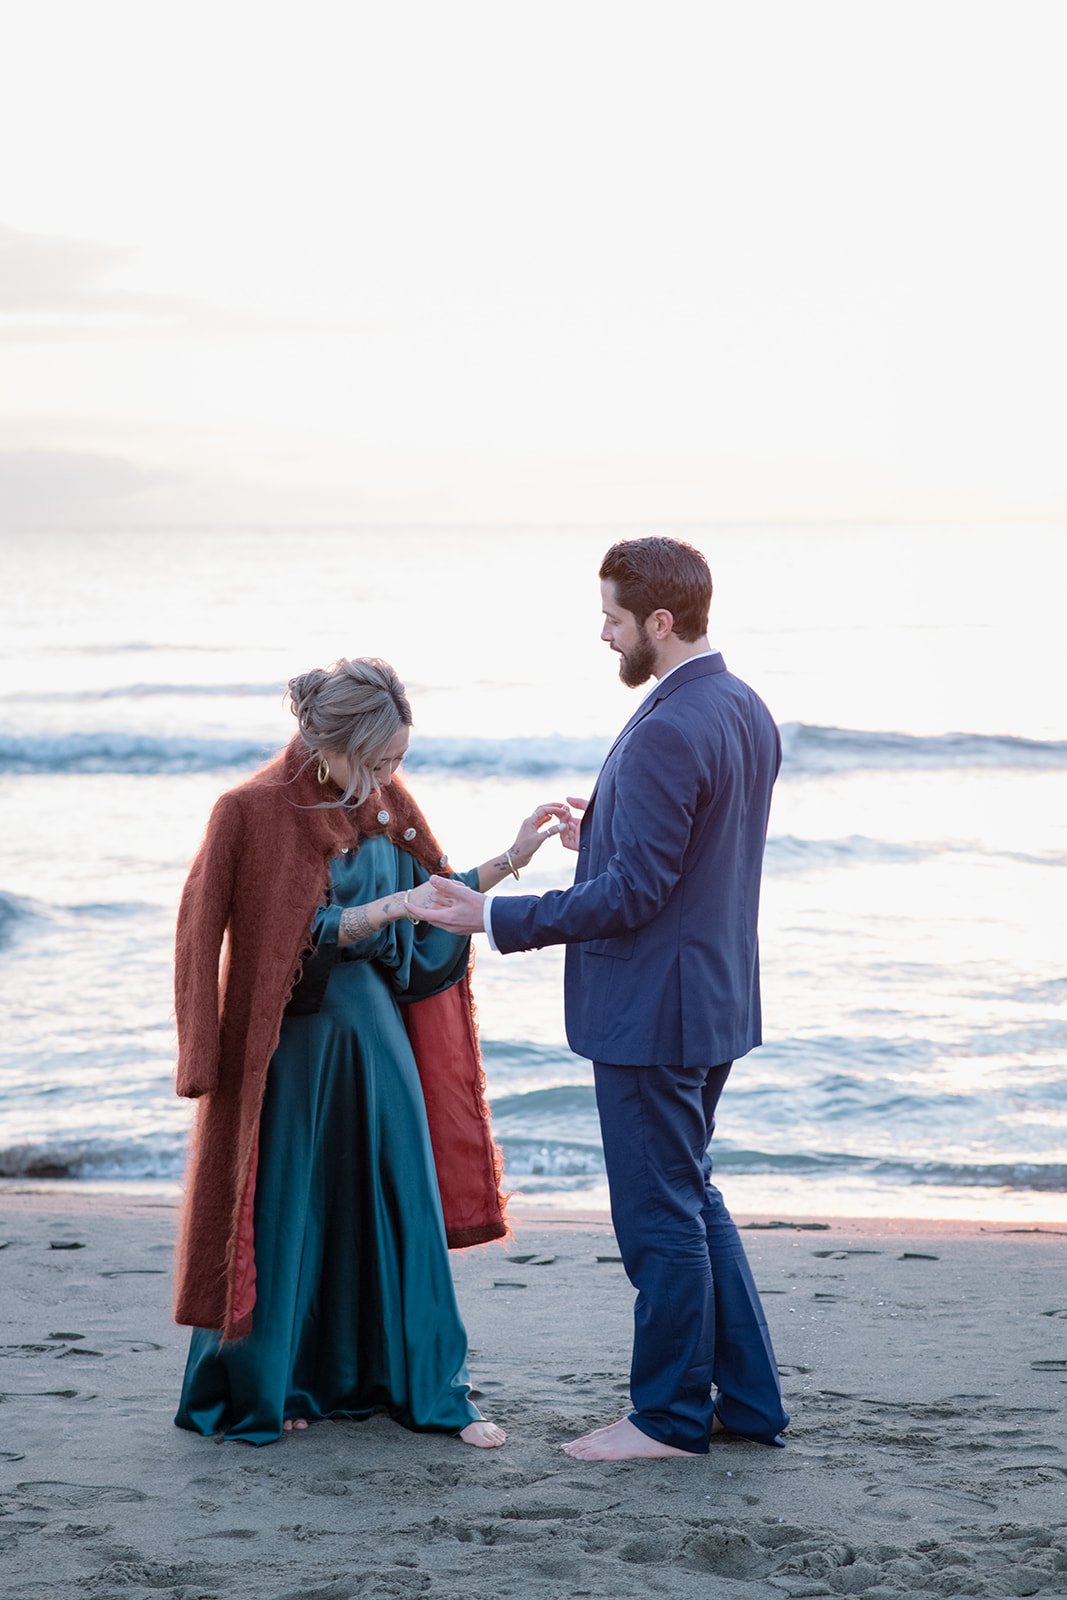 wedding proposal at the beach near rome.jpg